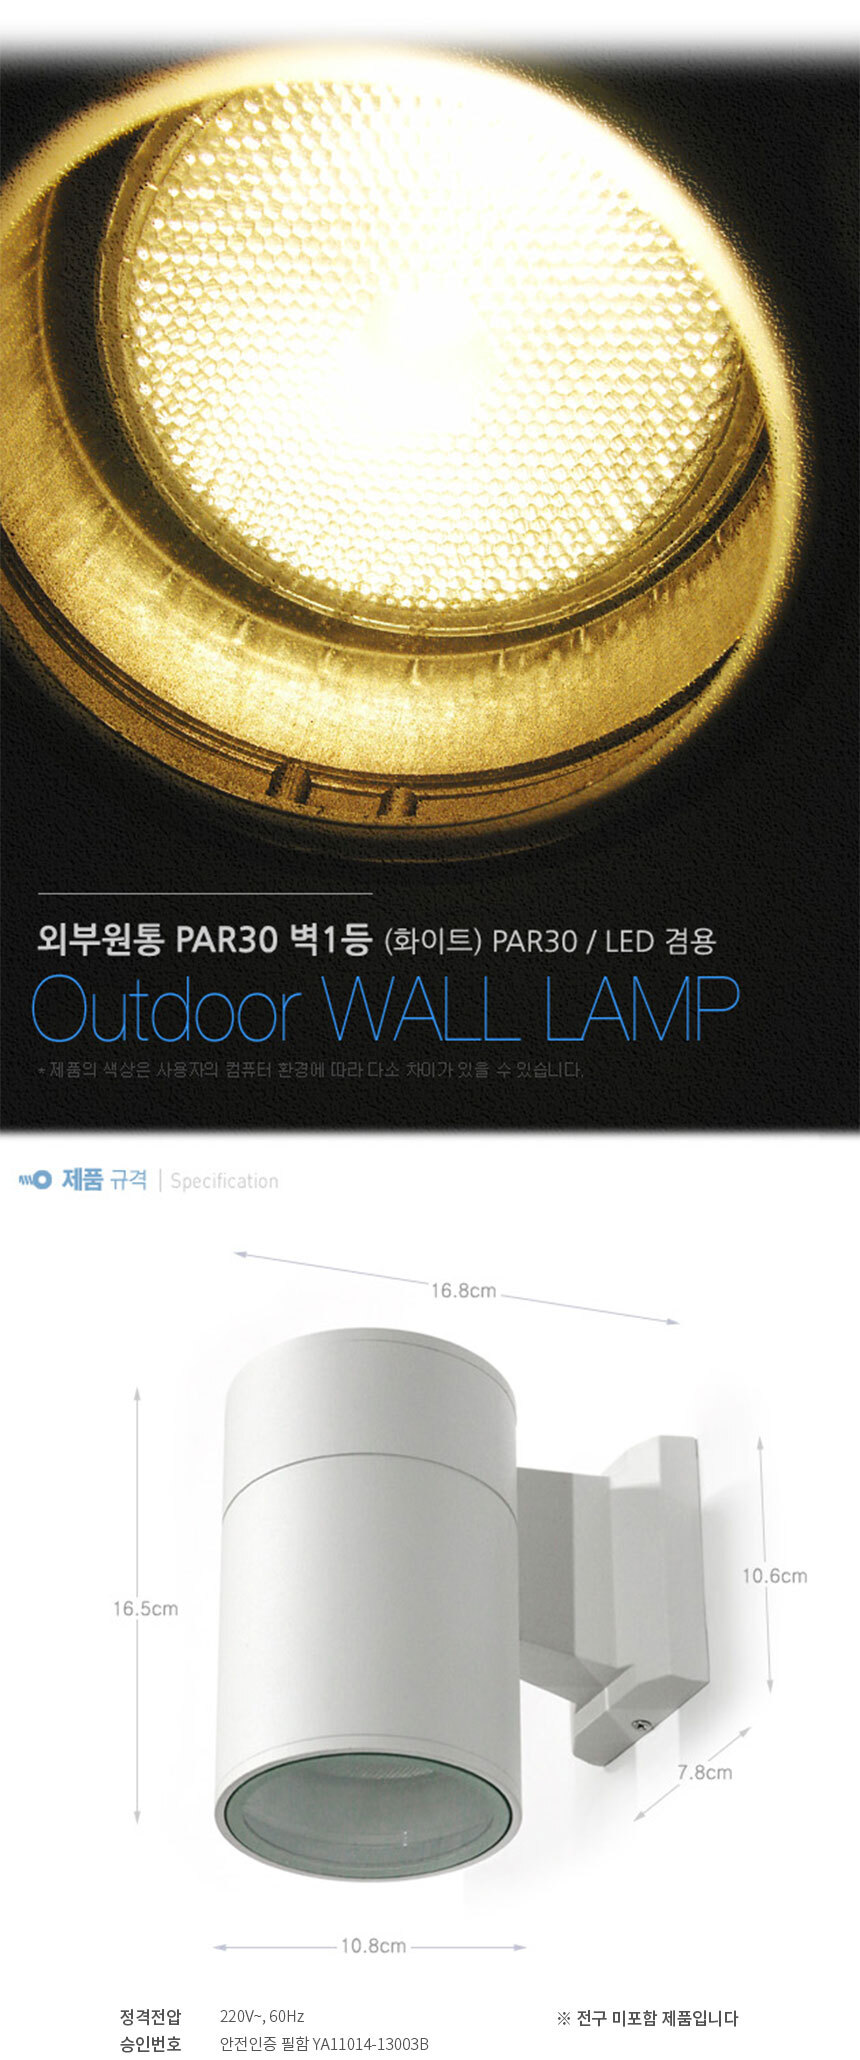 외부원통 PAR30 벽1등 (화이트) PAR30 / LED겸용
OUtdoor wall lamp
제품의 색상은 사용자의 컴퓨터 환경에 따라 다소 차이가 있을 수 있습니다.
제품규격 W10.8cm * D16.8cm * H16.5cm
정격전압 220V 60Hz
승인번호 안전인증 필함 YA11014-13003B
전구 미 포함 제품입니다
